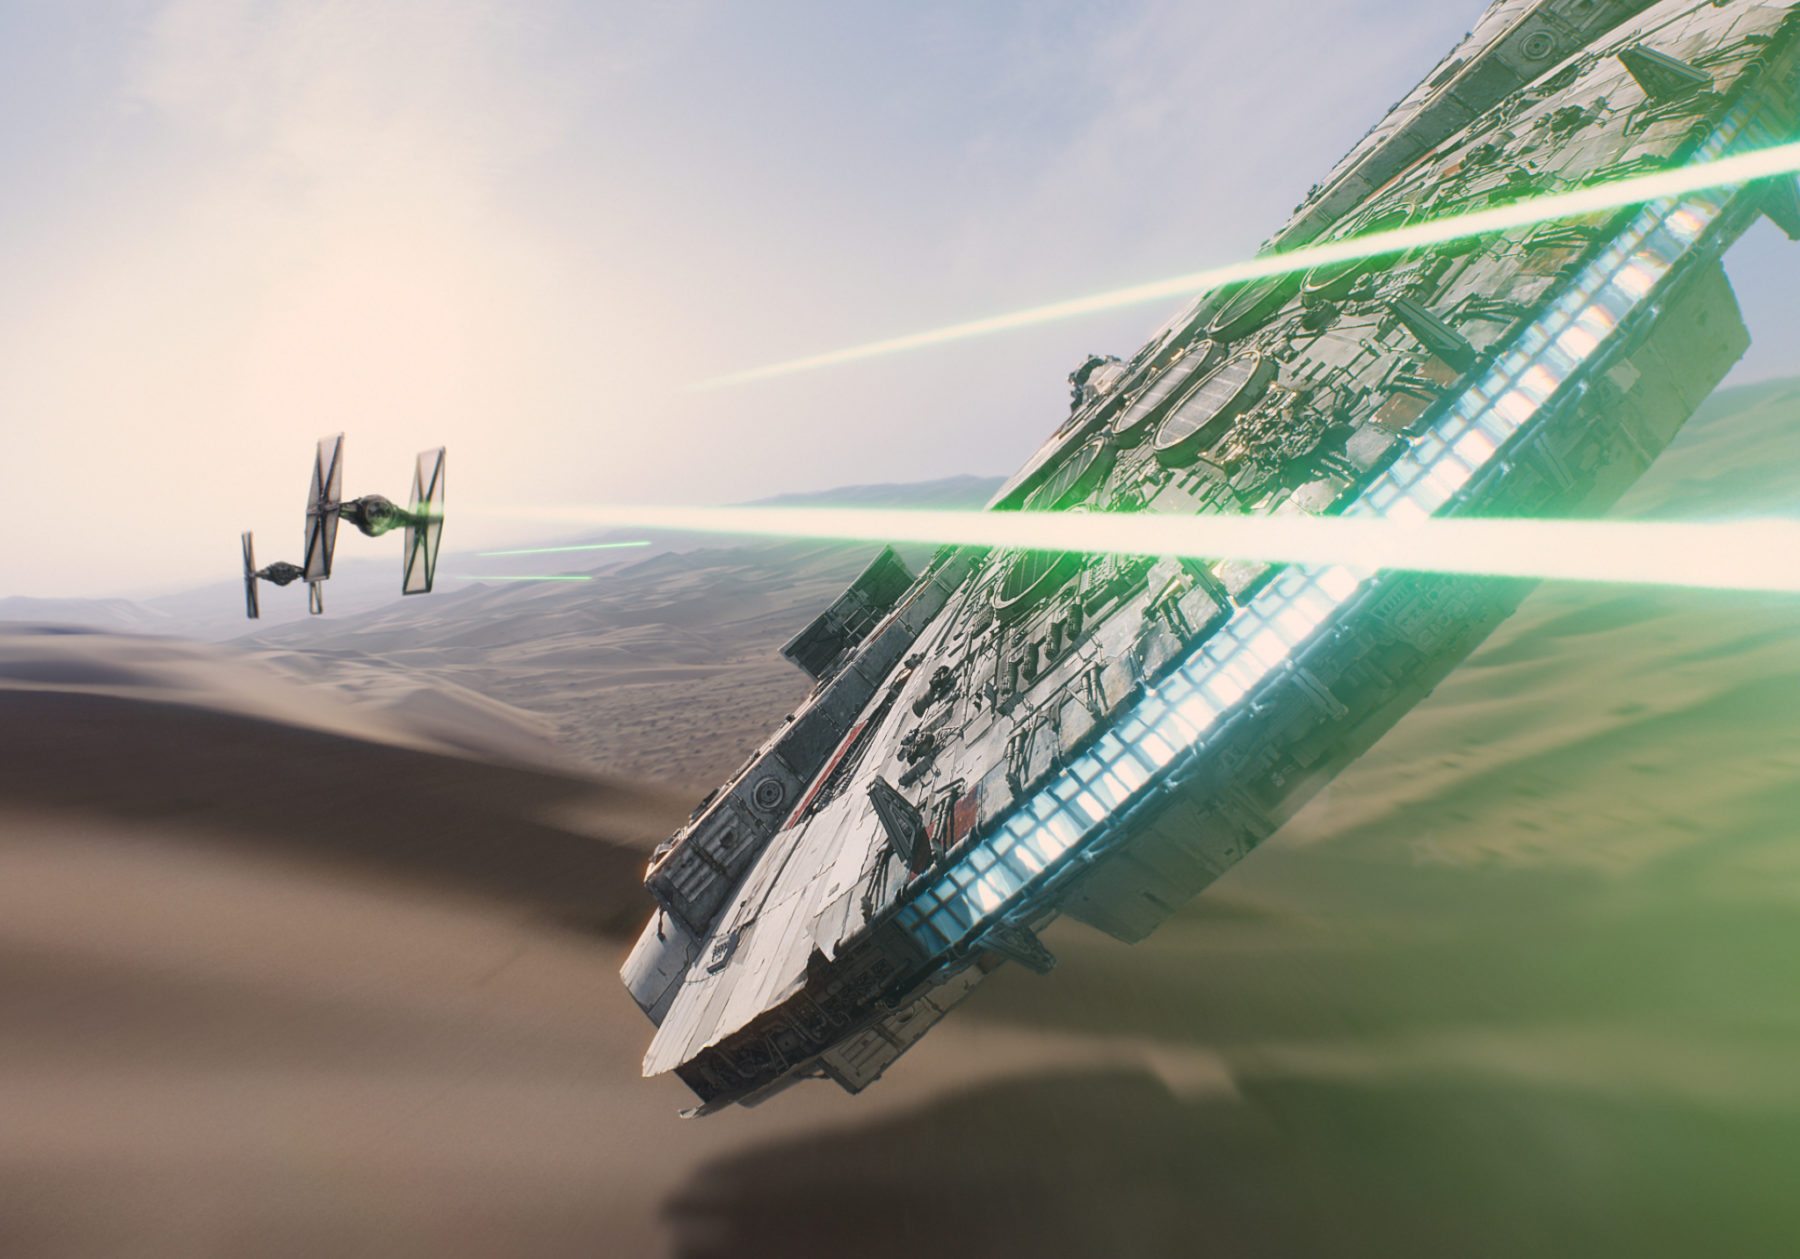 Kevin Smith cree que el Halcón Milenario será destruido en Star Wars: Episodio IX